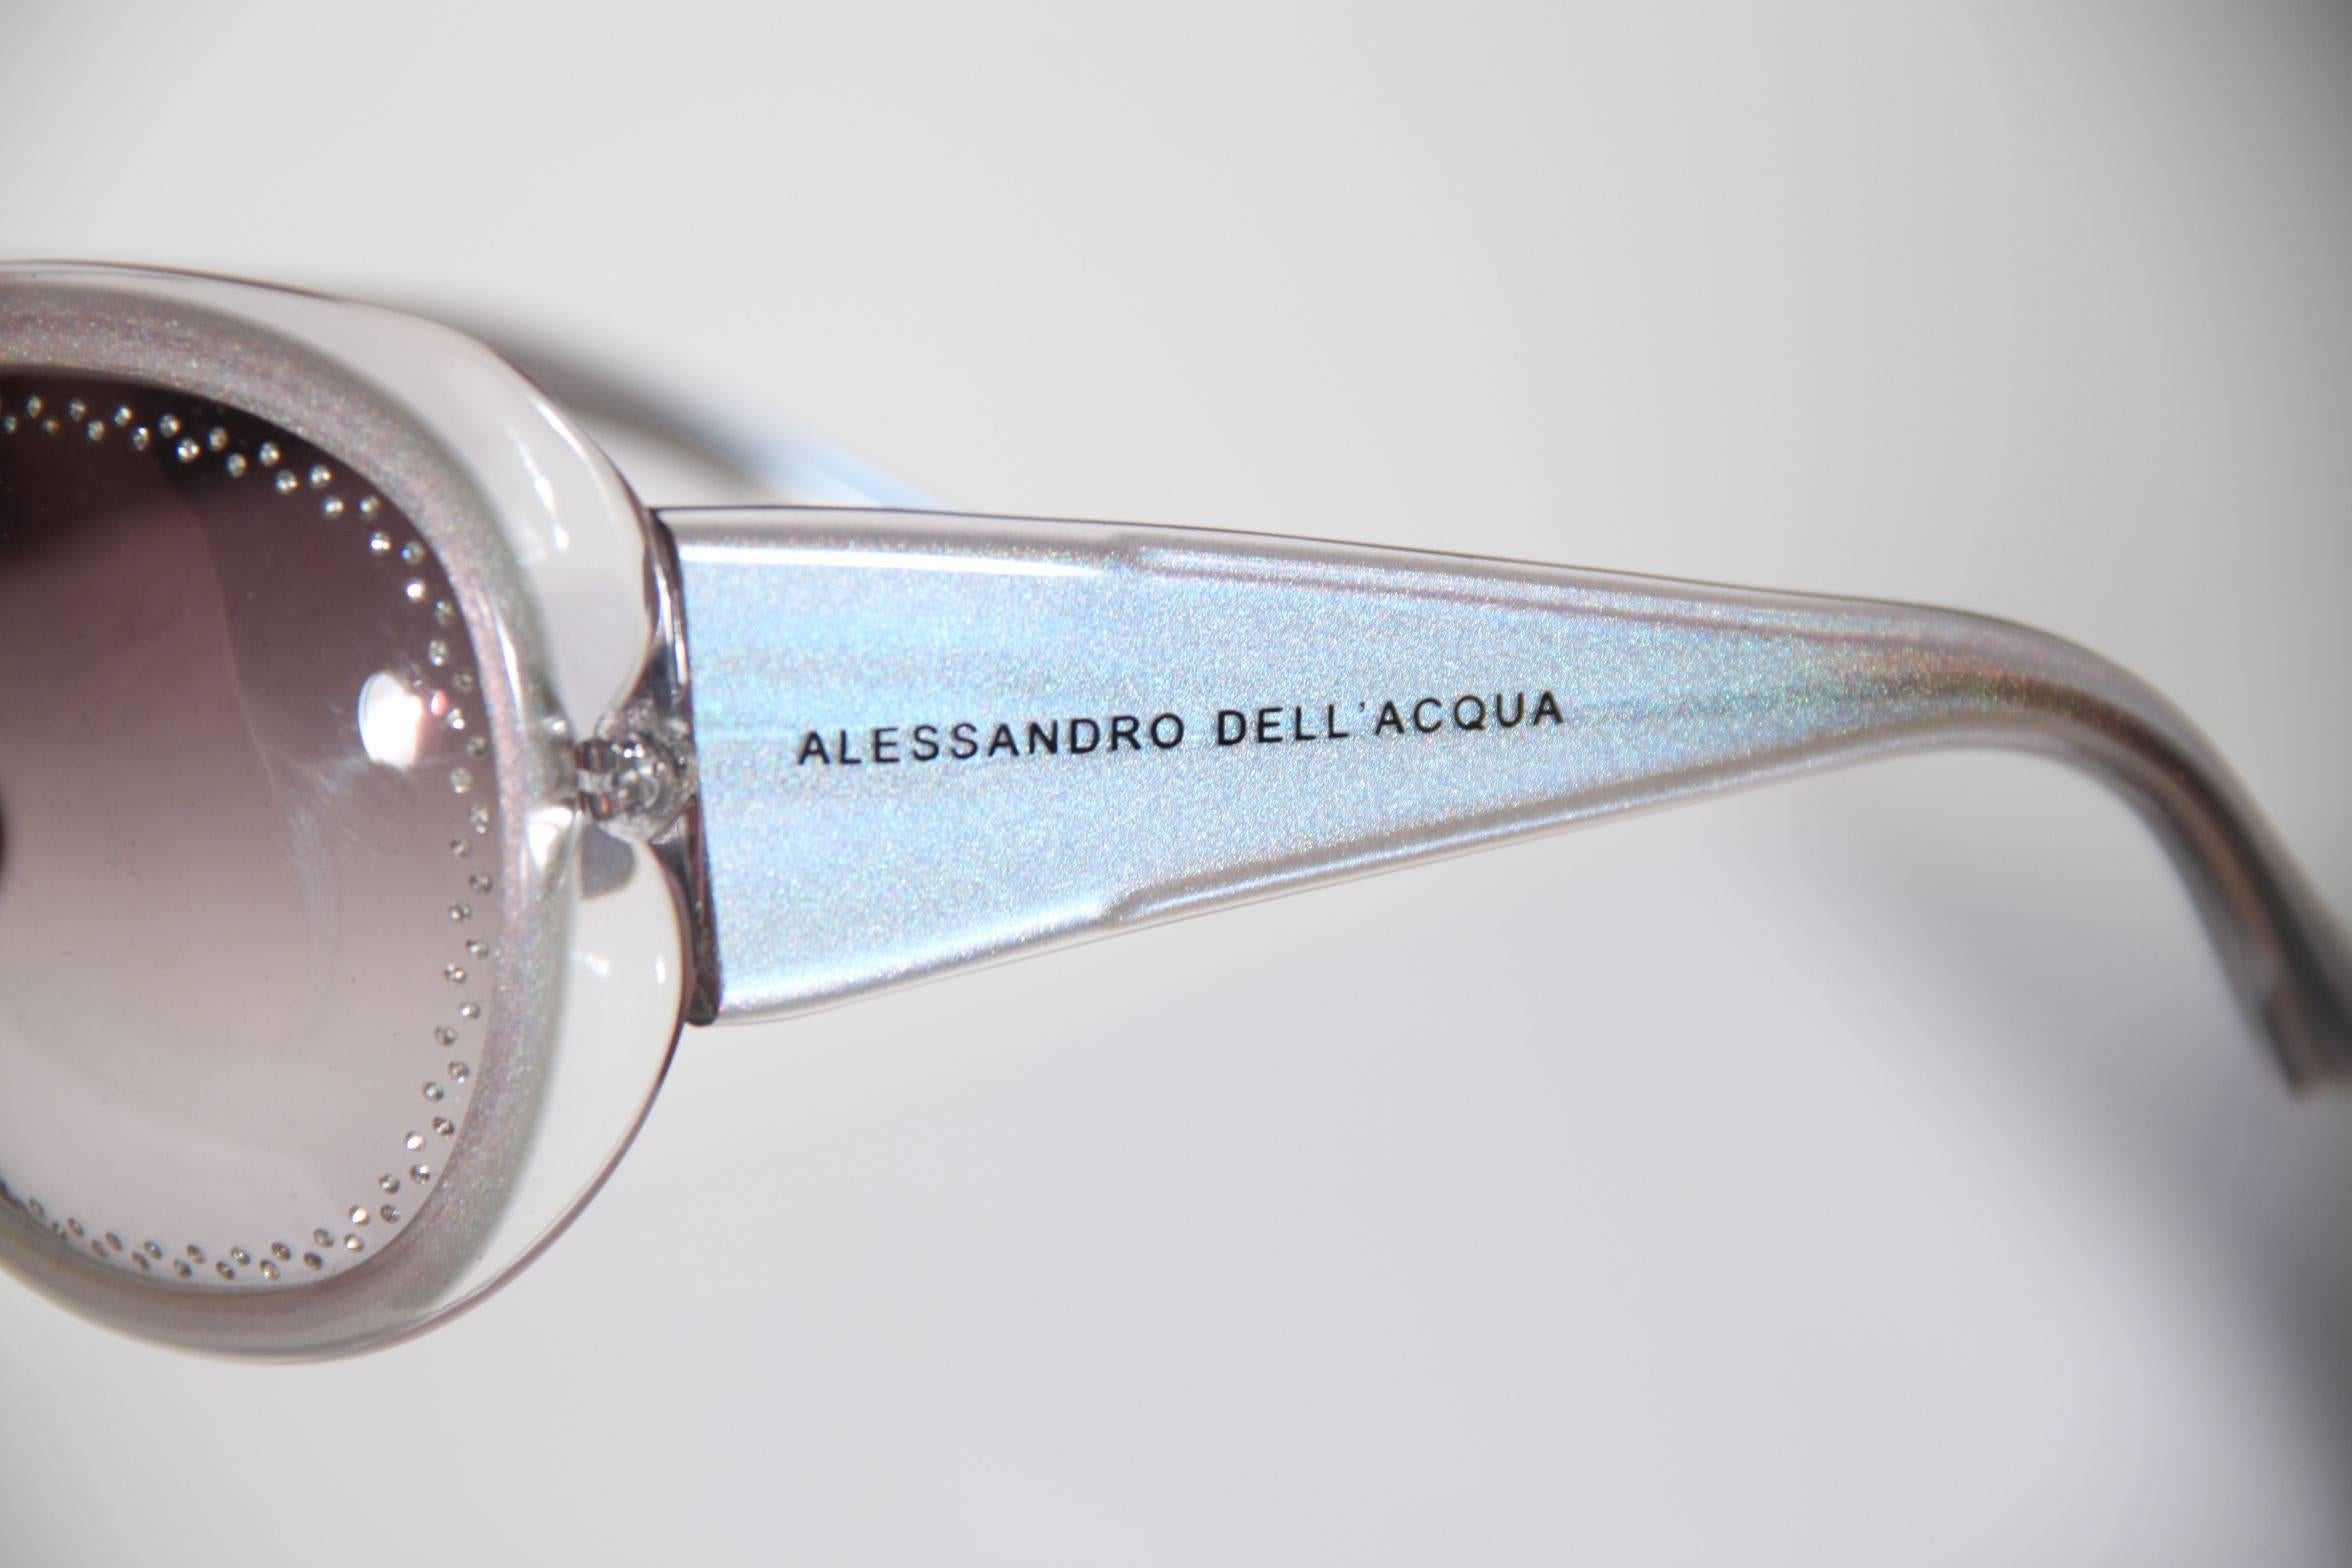 ALESSANDRO DELL'ACQUA Gray SUNGLASSES AD 15092 Oversized SHADES Eyewear MP 1